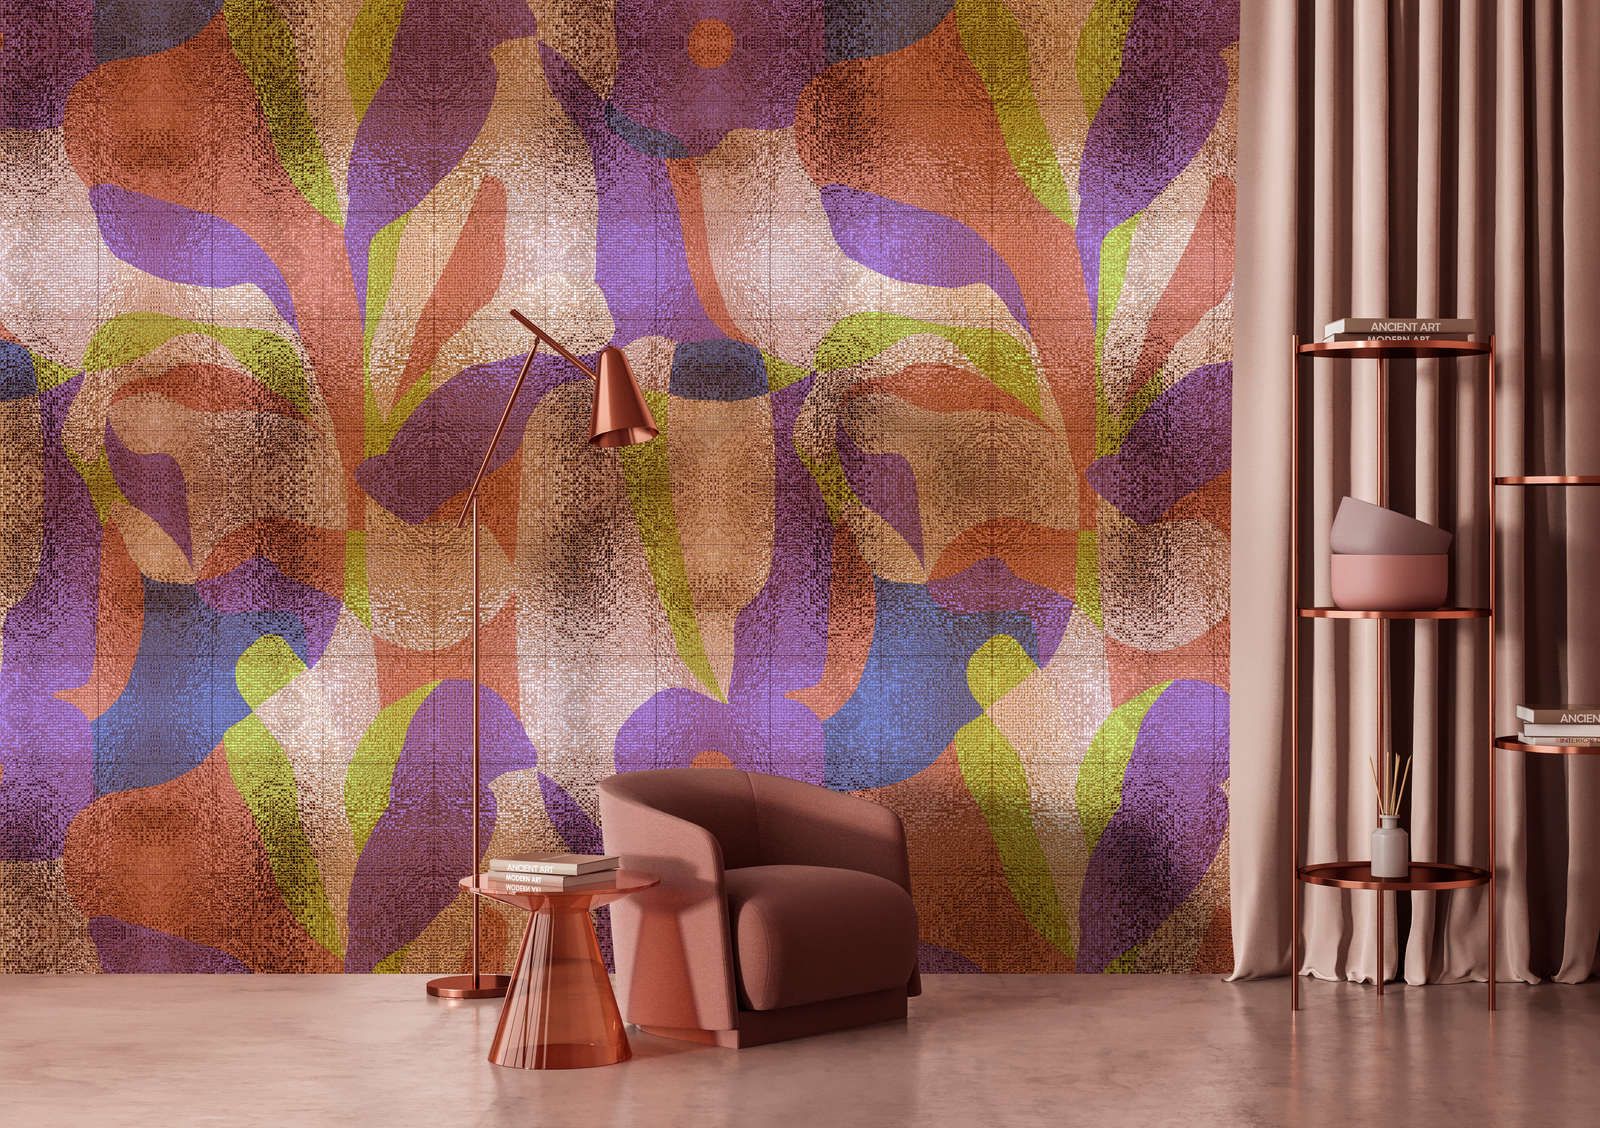             Fotomural »brillanaza« - Diseño gráfico de hojas de colores con estructura de mosaico - Material no tejido de textura ligera
        